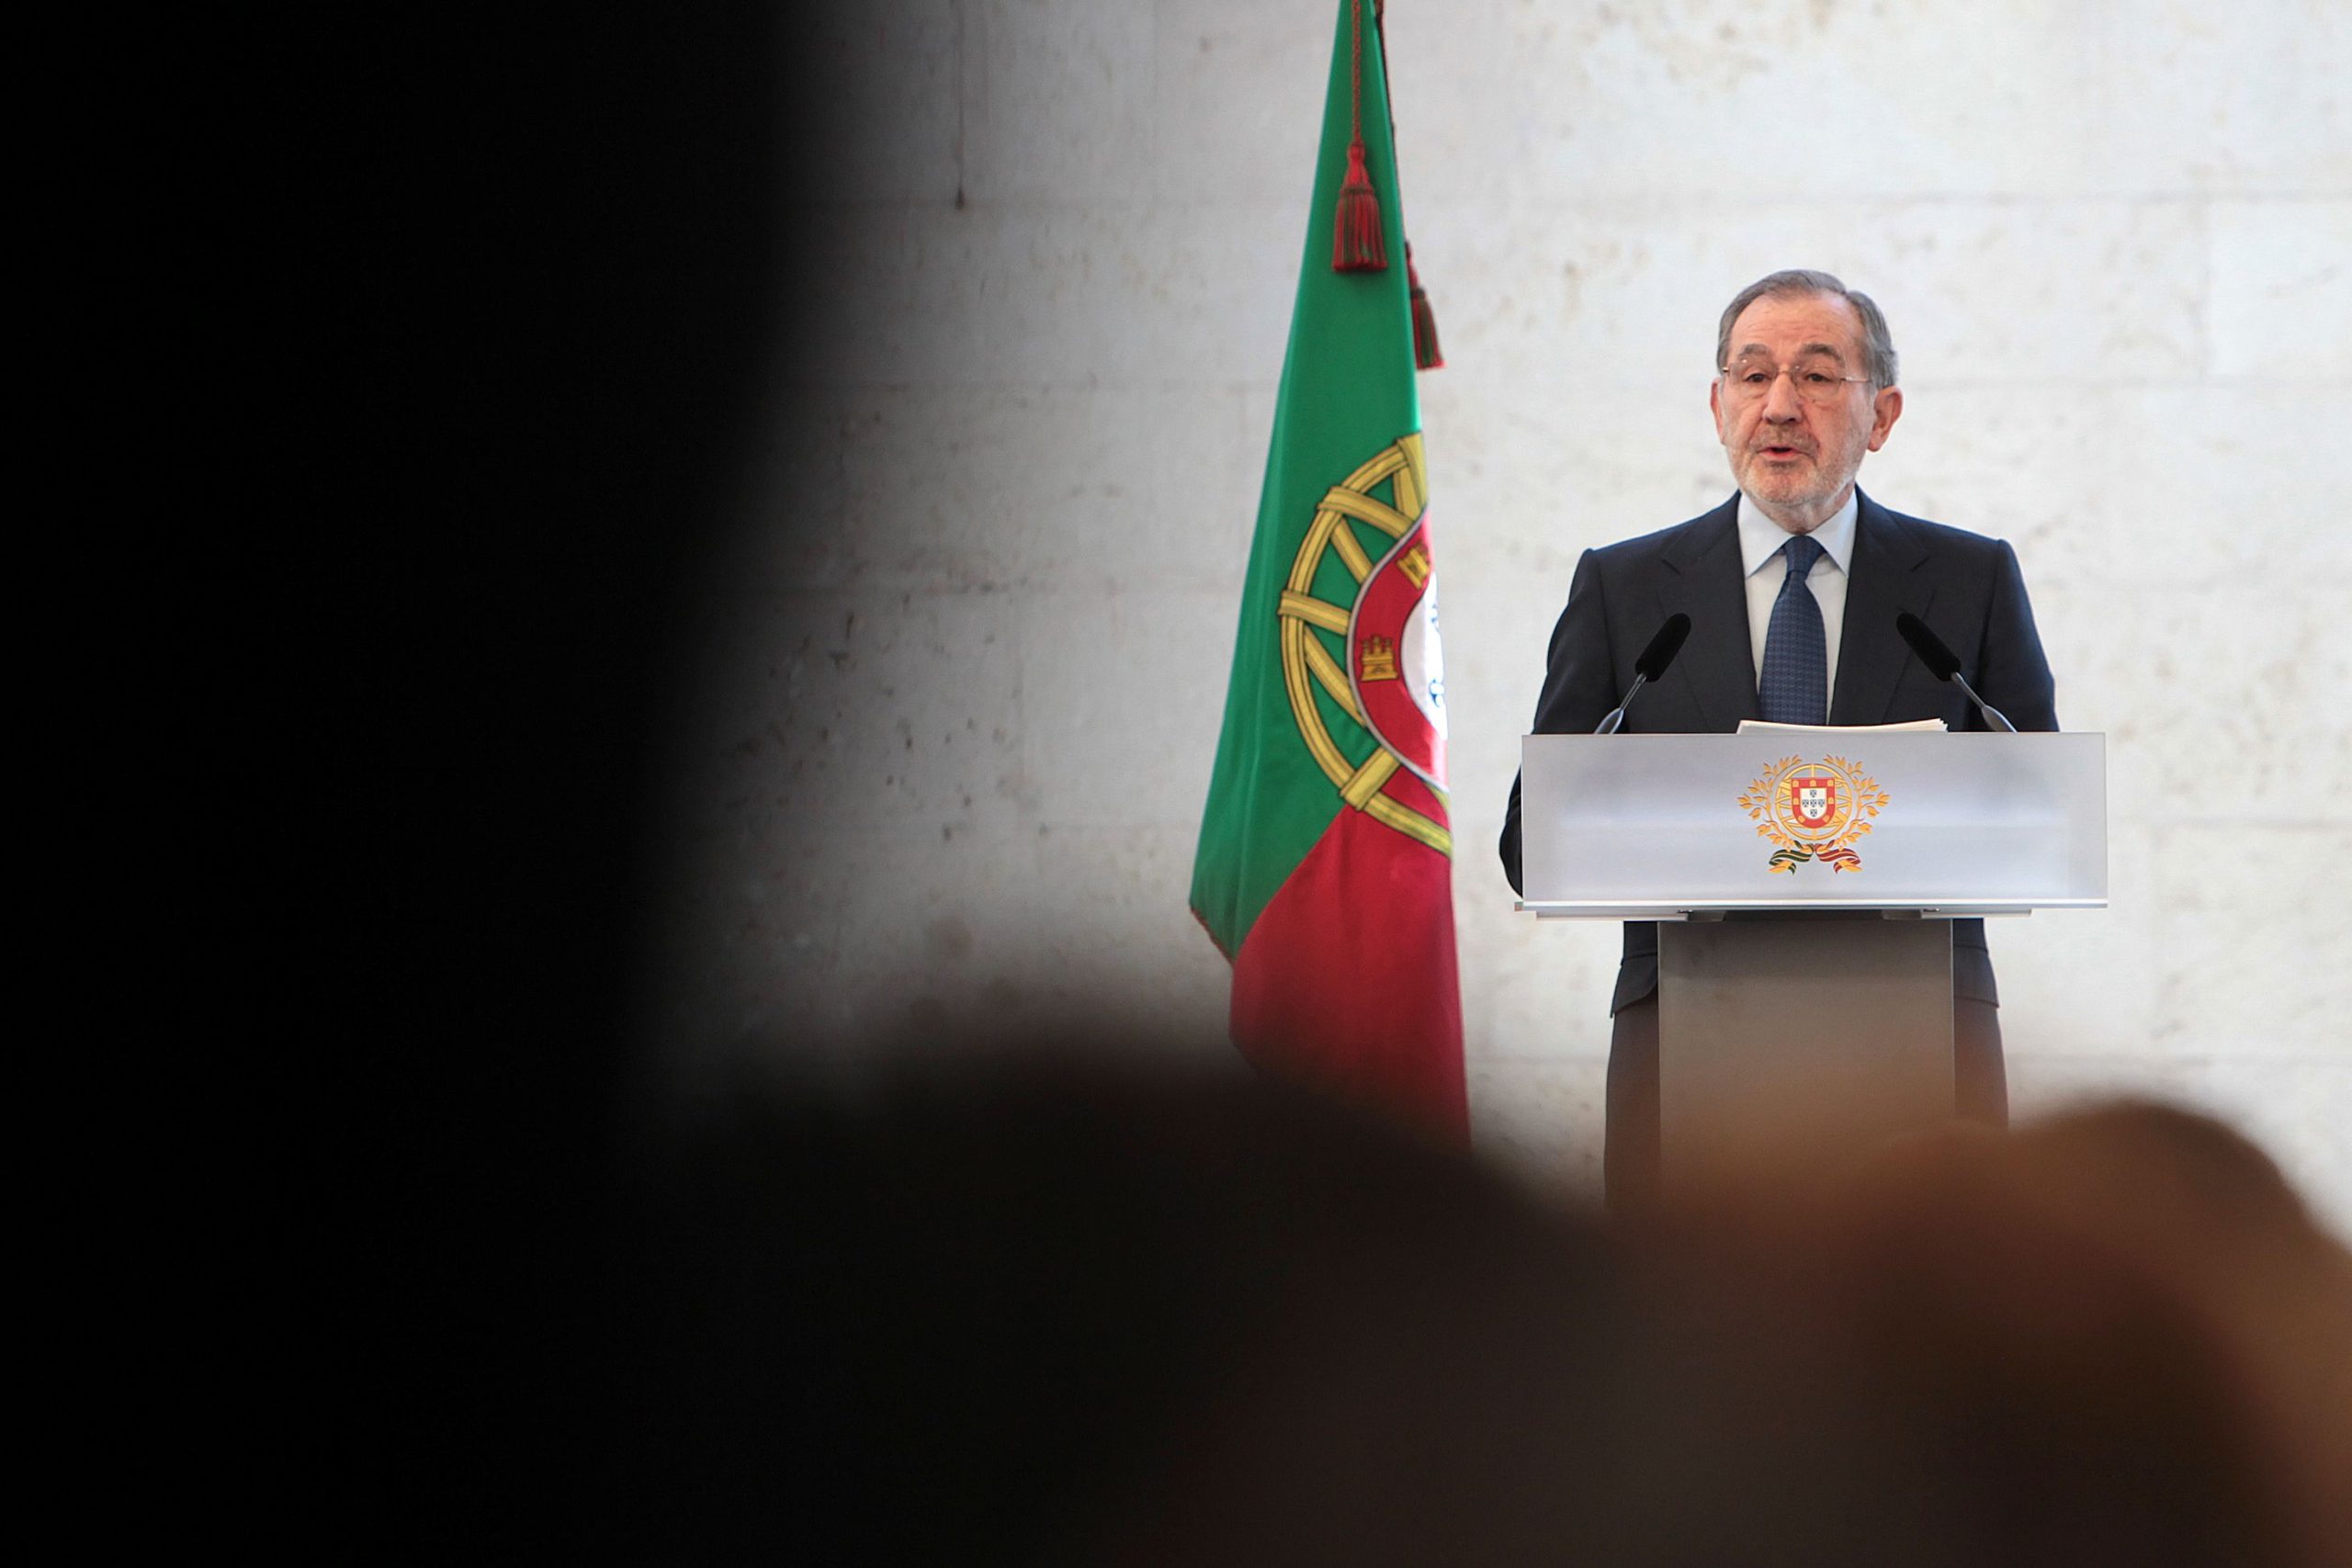 Eanes espera voltar a ver Portugal ‘regenerado, coeso, confiante e ousado’